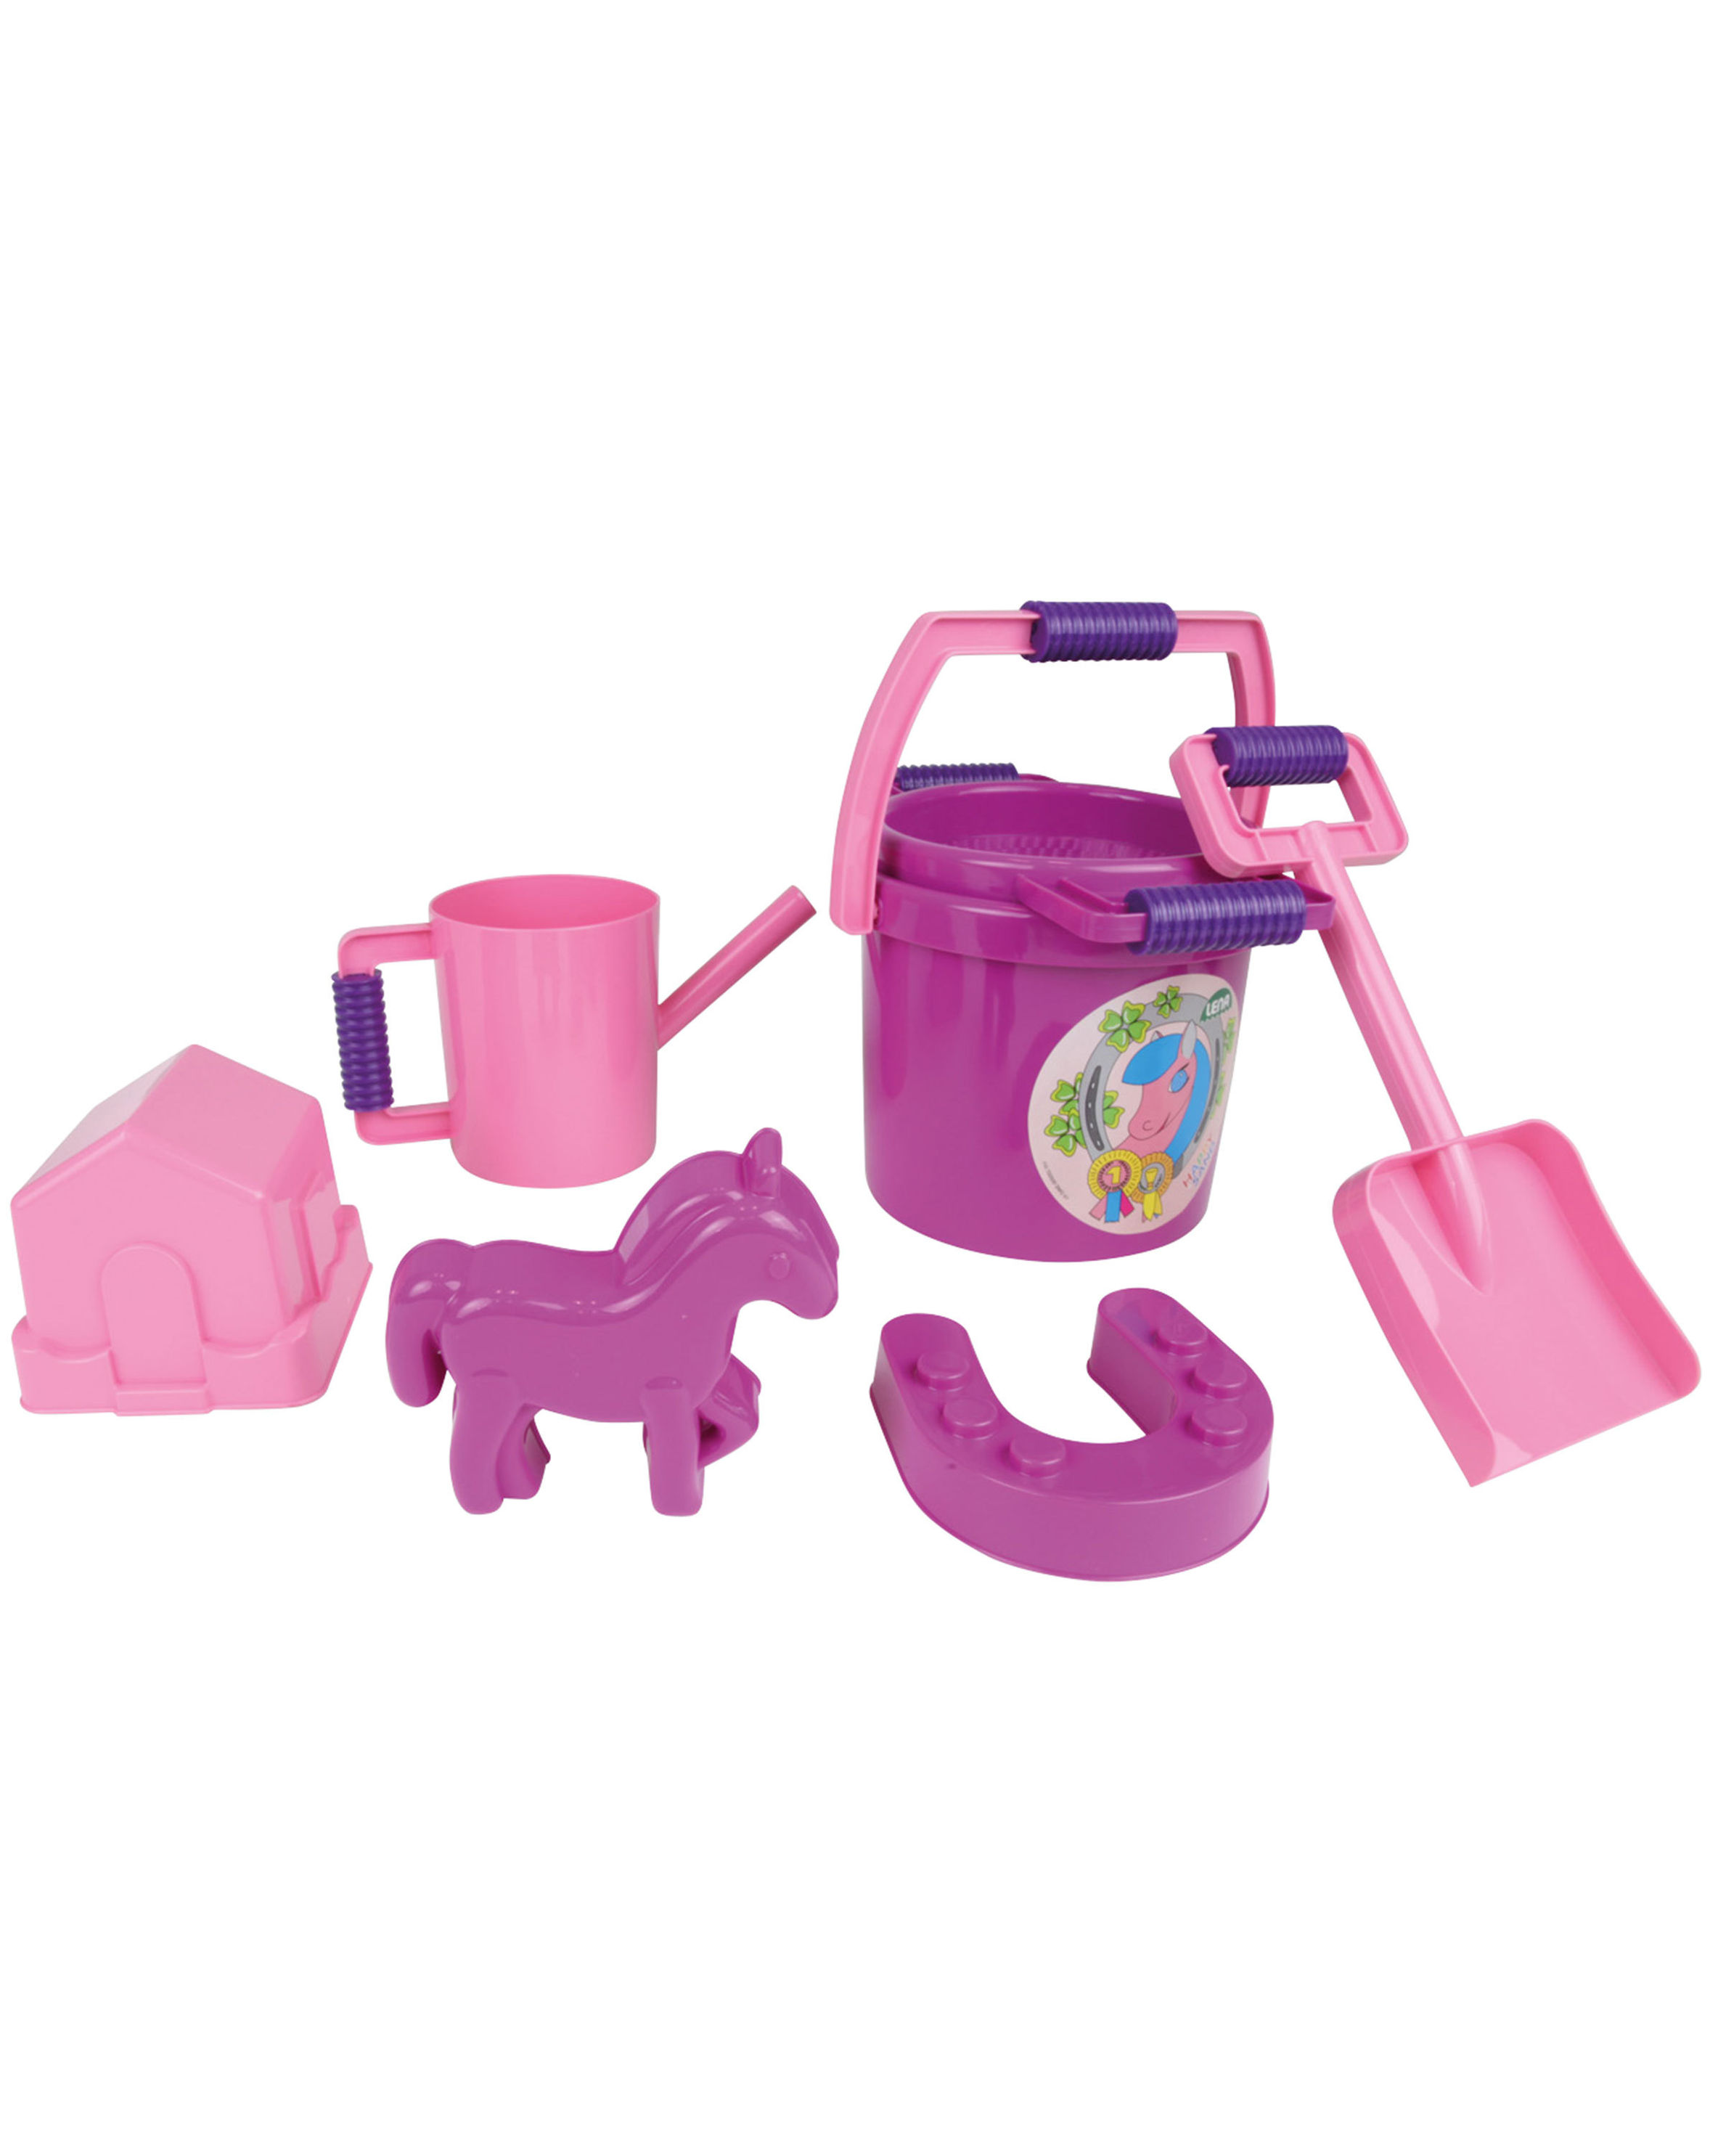 Sandspielzeug-Set PONY 7-teilig in pink kaufen | tausendkind.de